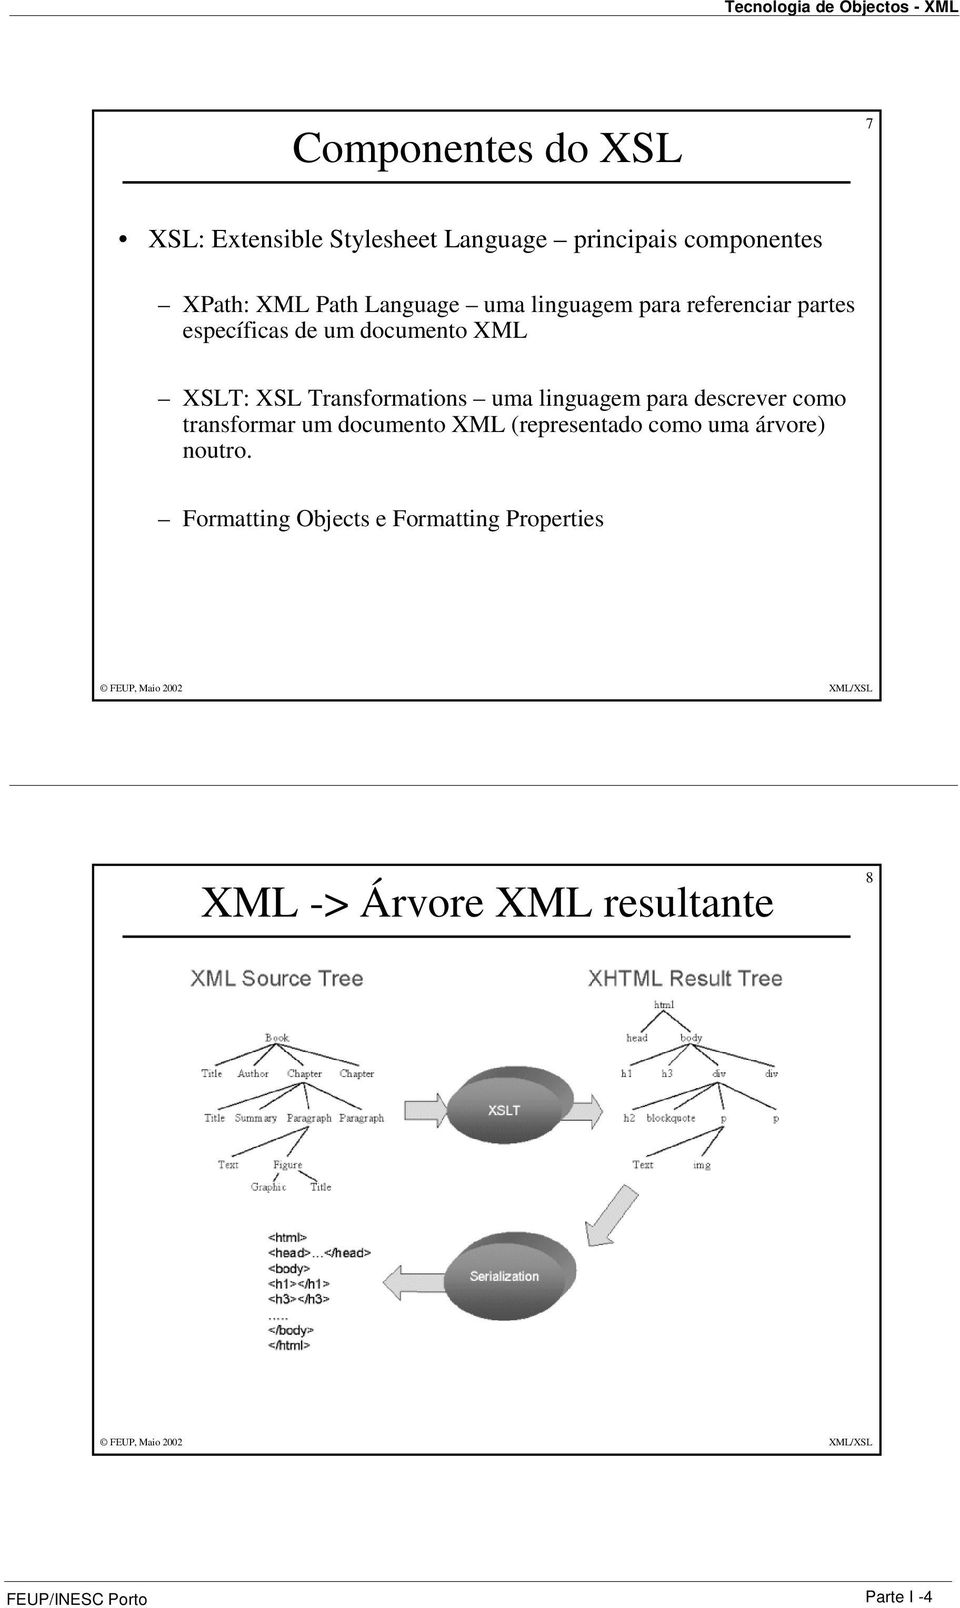 Transformations uma linguagem para descrever como transformar um documento XML (representado